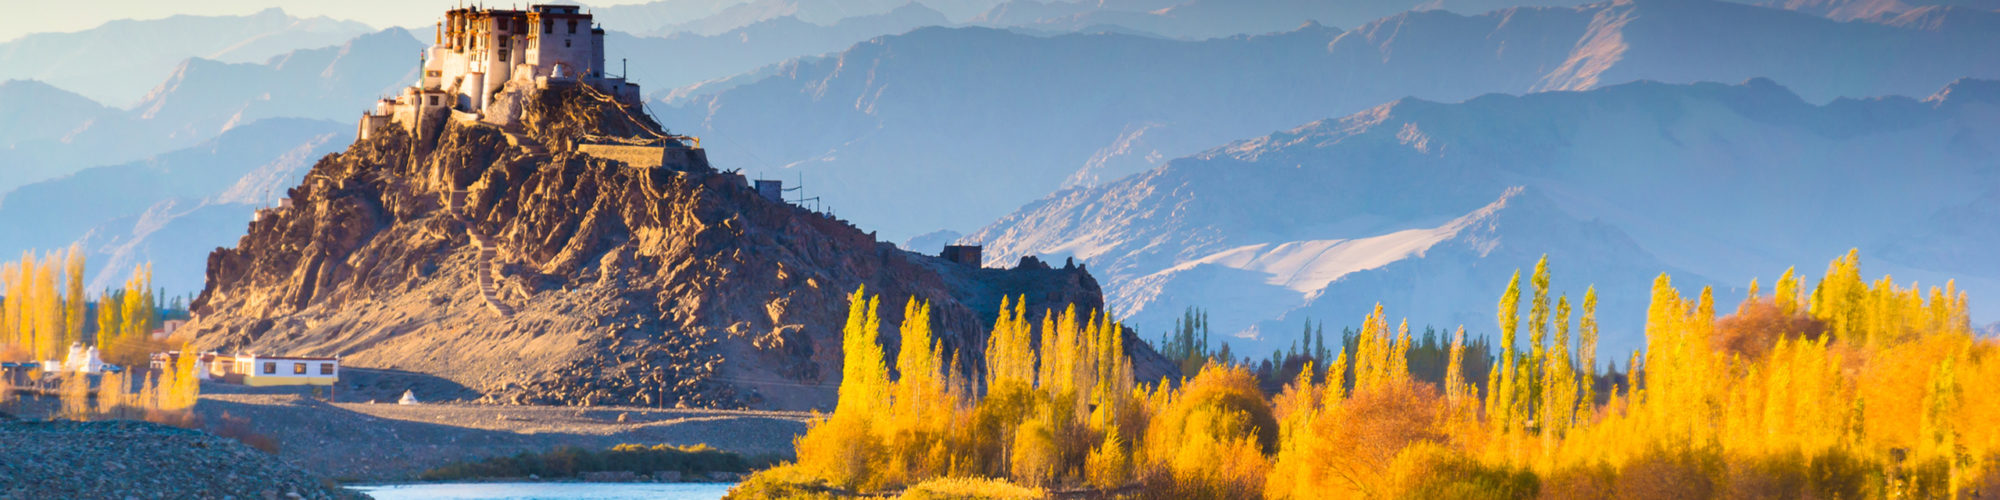 Ladakh travel agents packages deals